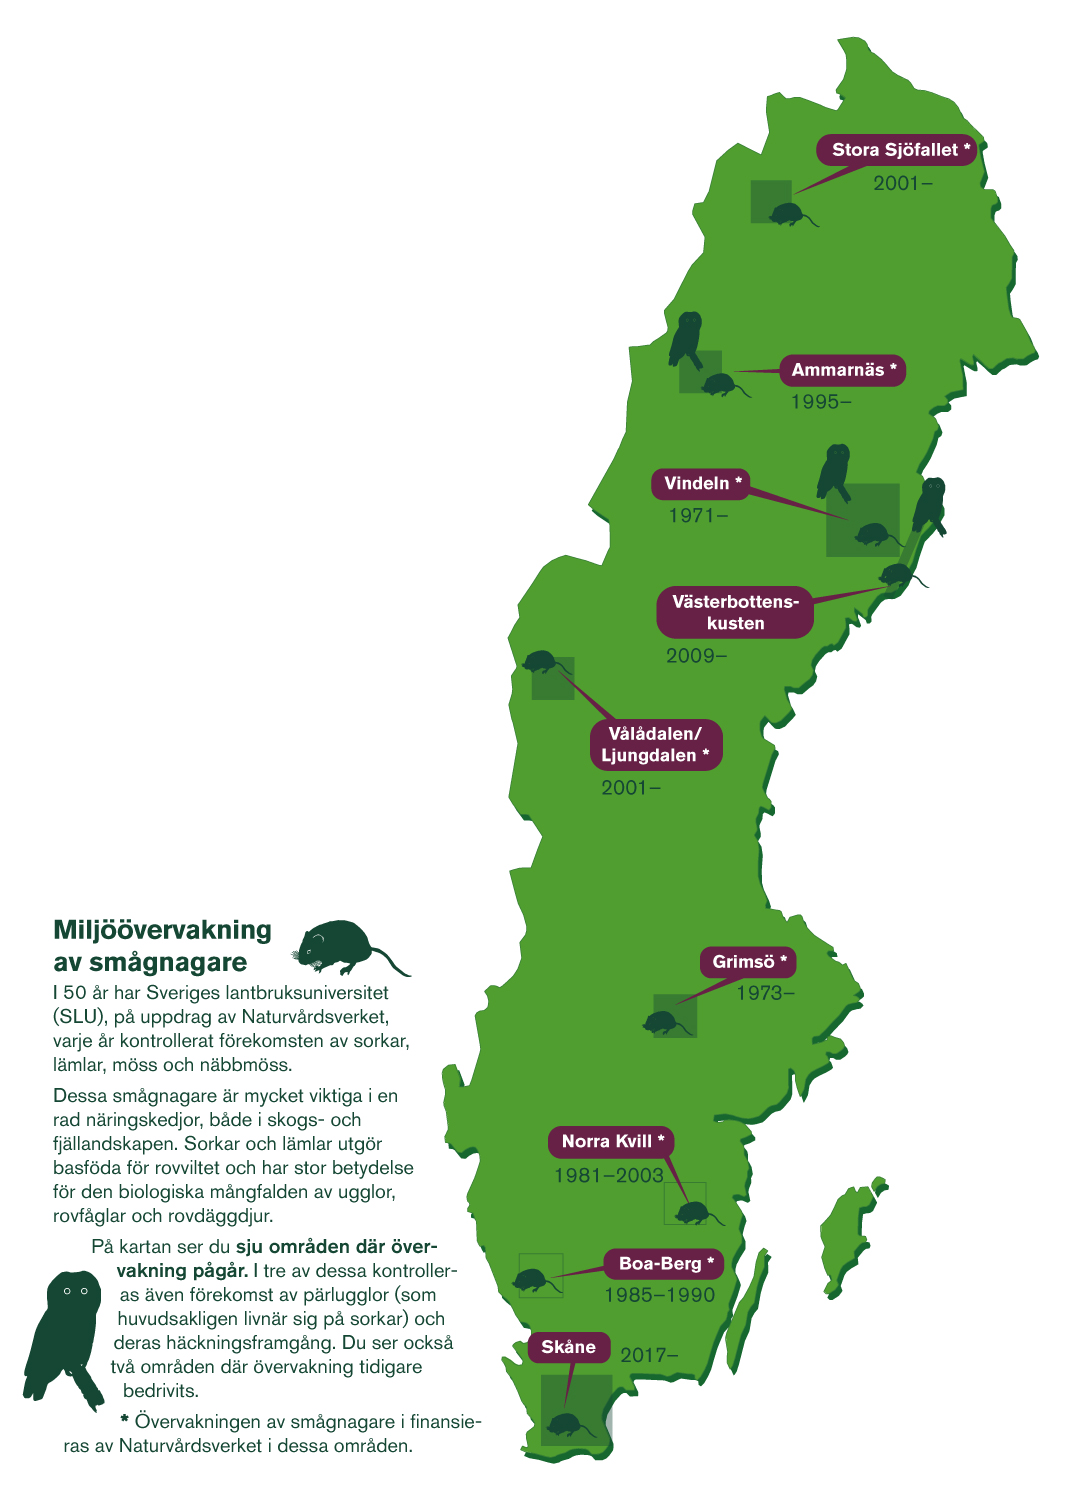 Sverigekarta där områdena Stora Sjöfallet, Ammarnäs, Vindeln, Västerbottenskusten, Vålådalen/Ljungdalen, Grimsö, Norra Kvill, Boa-Berg och Skåne är utmärkta.